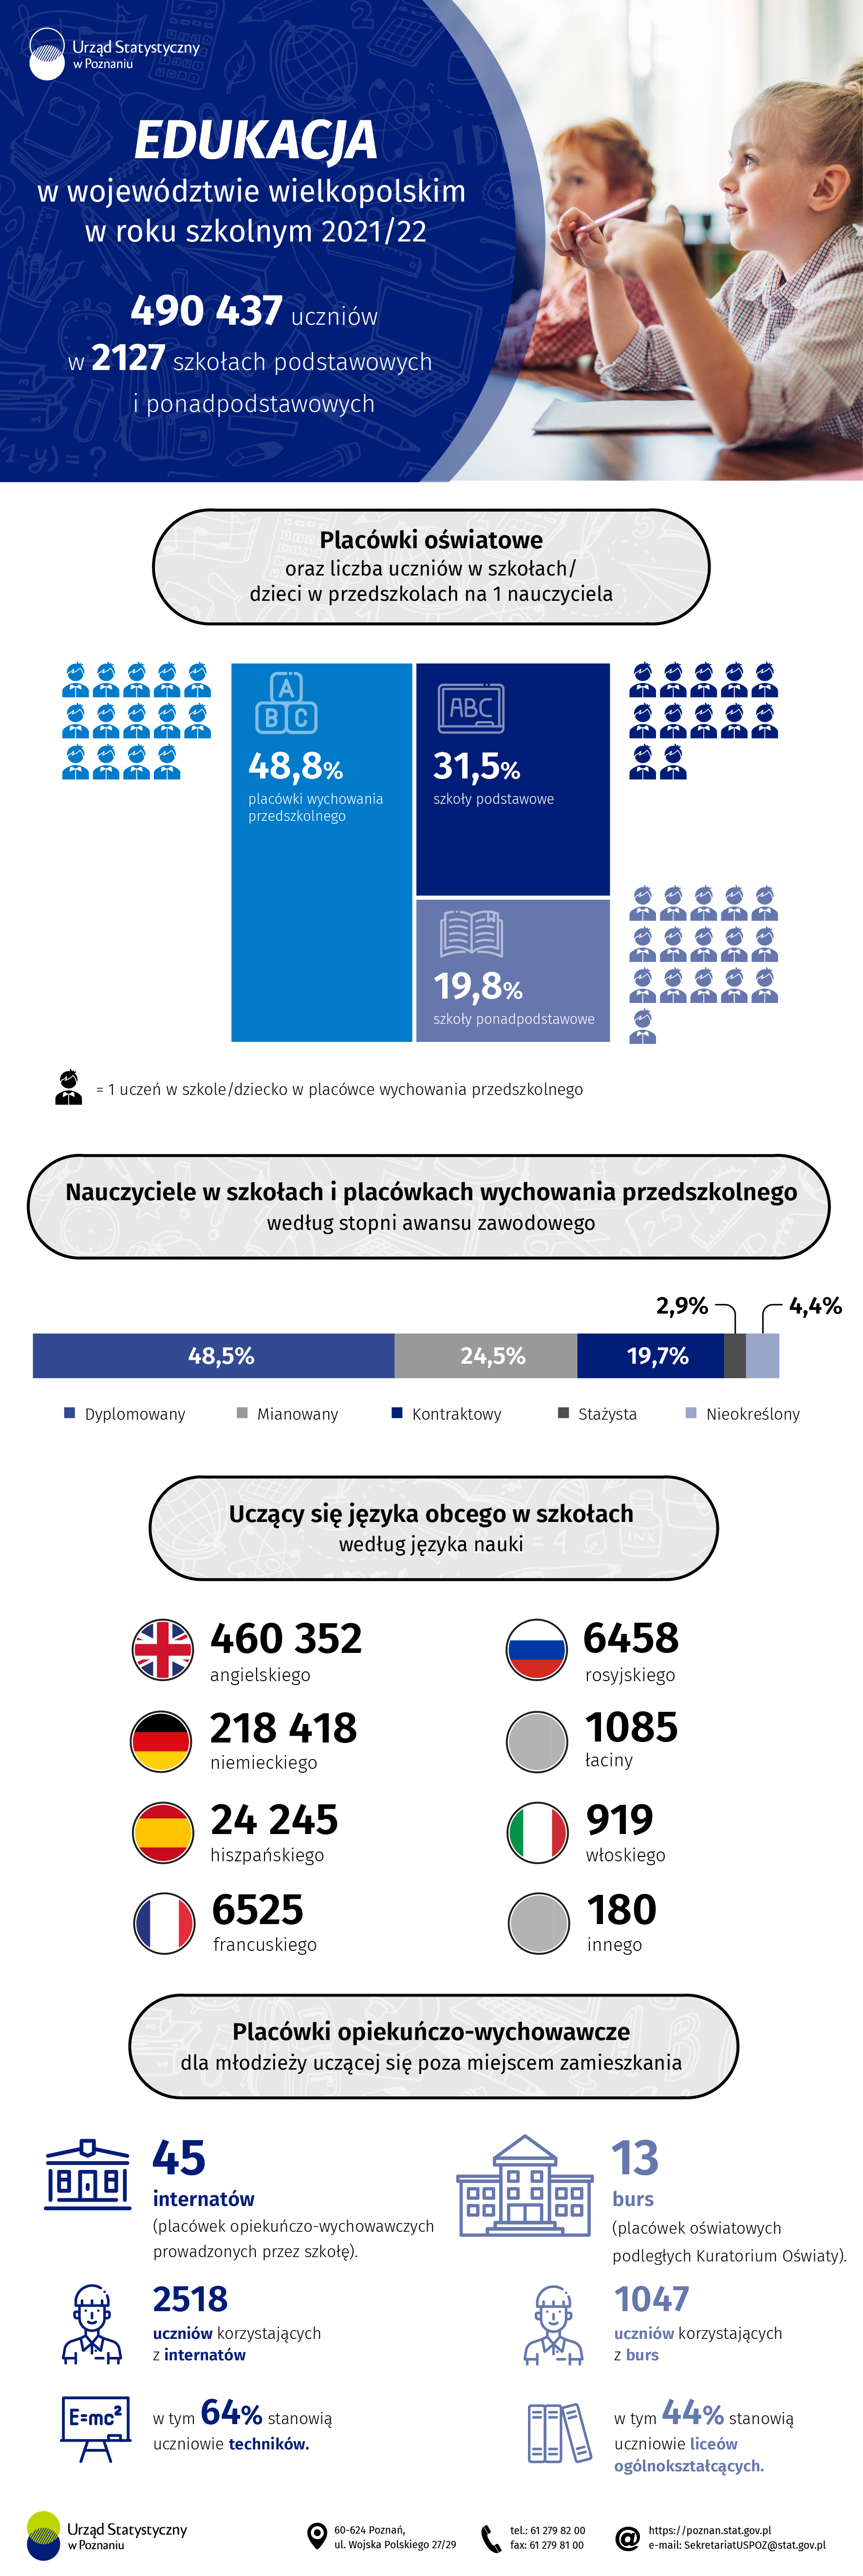 Infografika przedstawiająca dane dotyczące edukacji w województwie wielkopolskim w roku szkolnym 2021/22